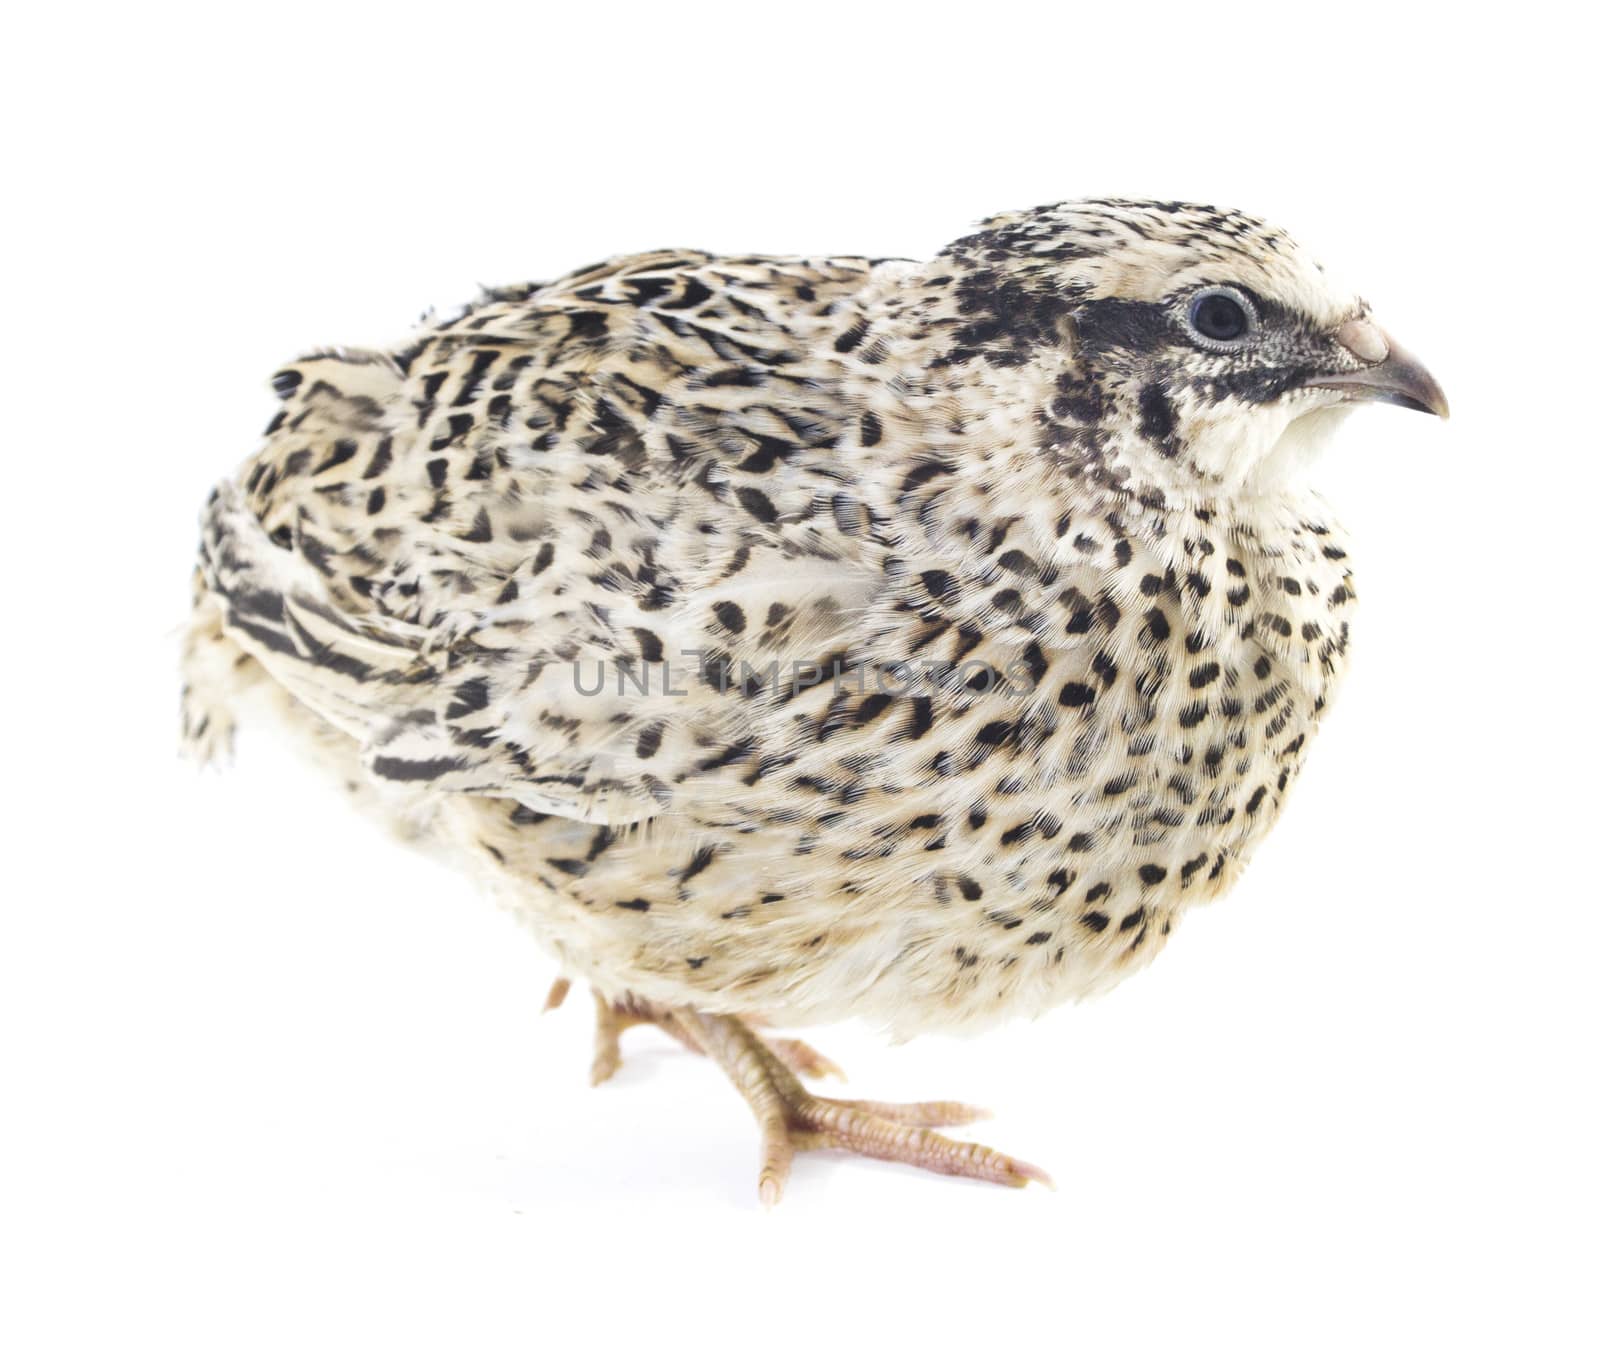 quail isolated on white background